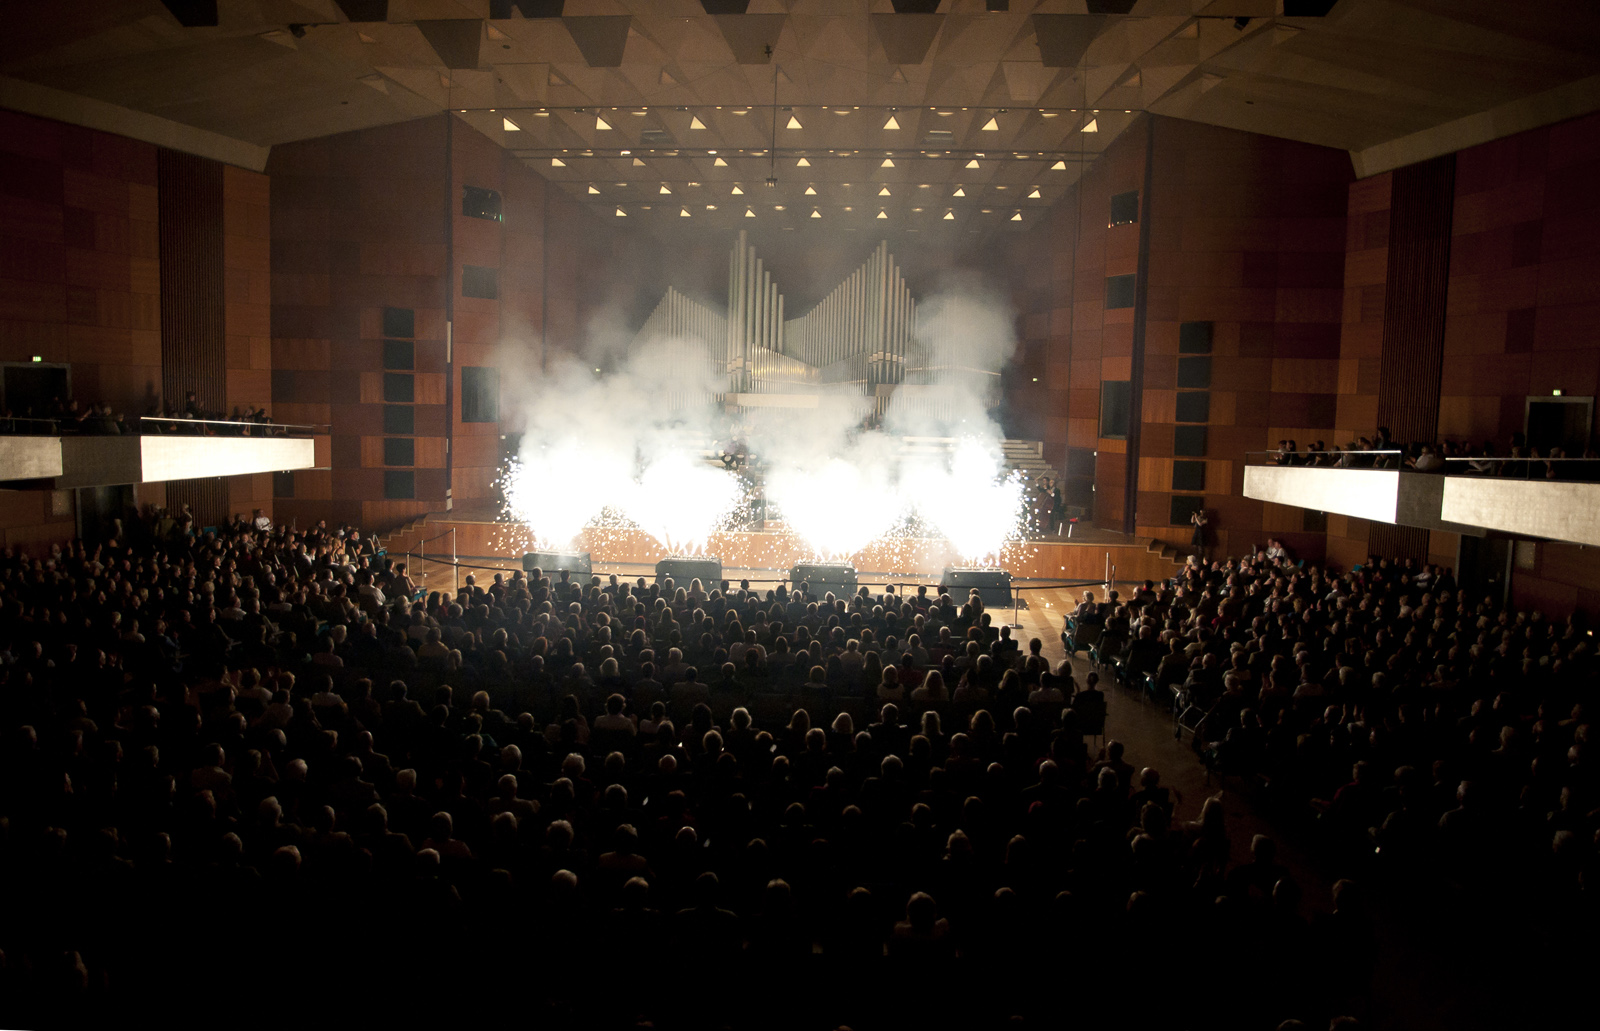 Os salões do Meistersingerhalle foram abertos para, inicialmente, abrigar concertos (Foto: btl1.de)